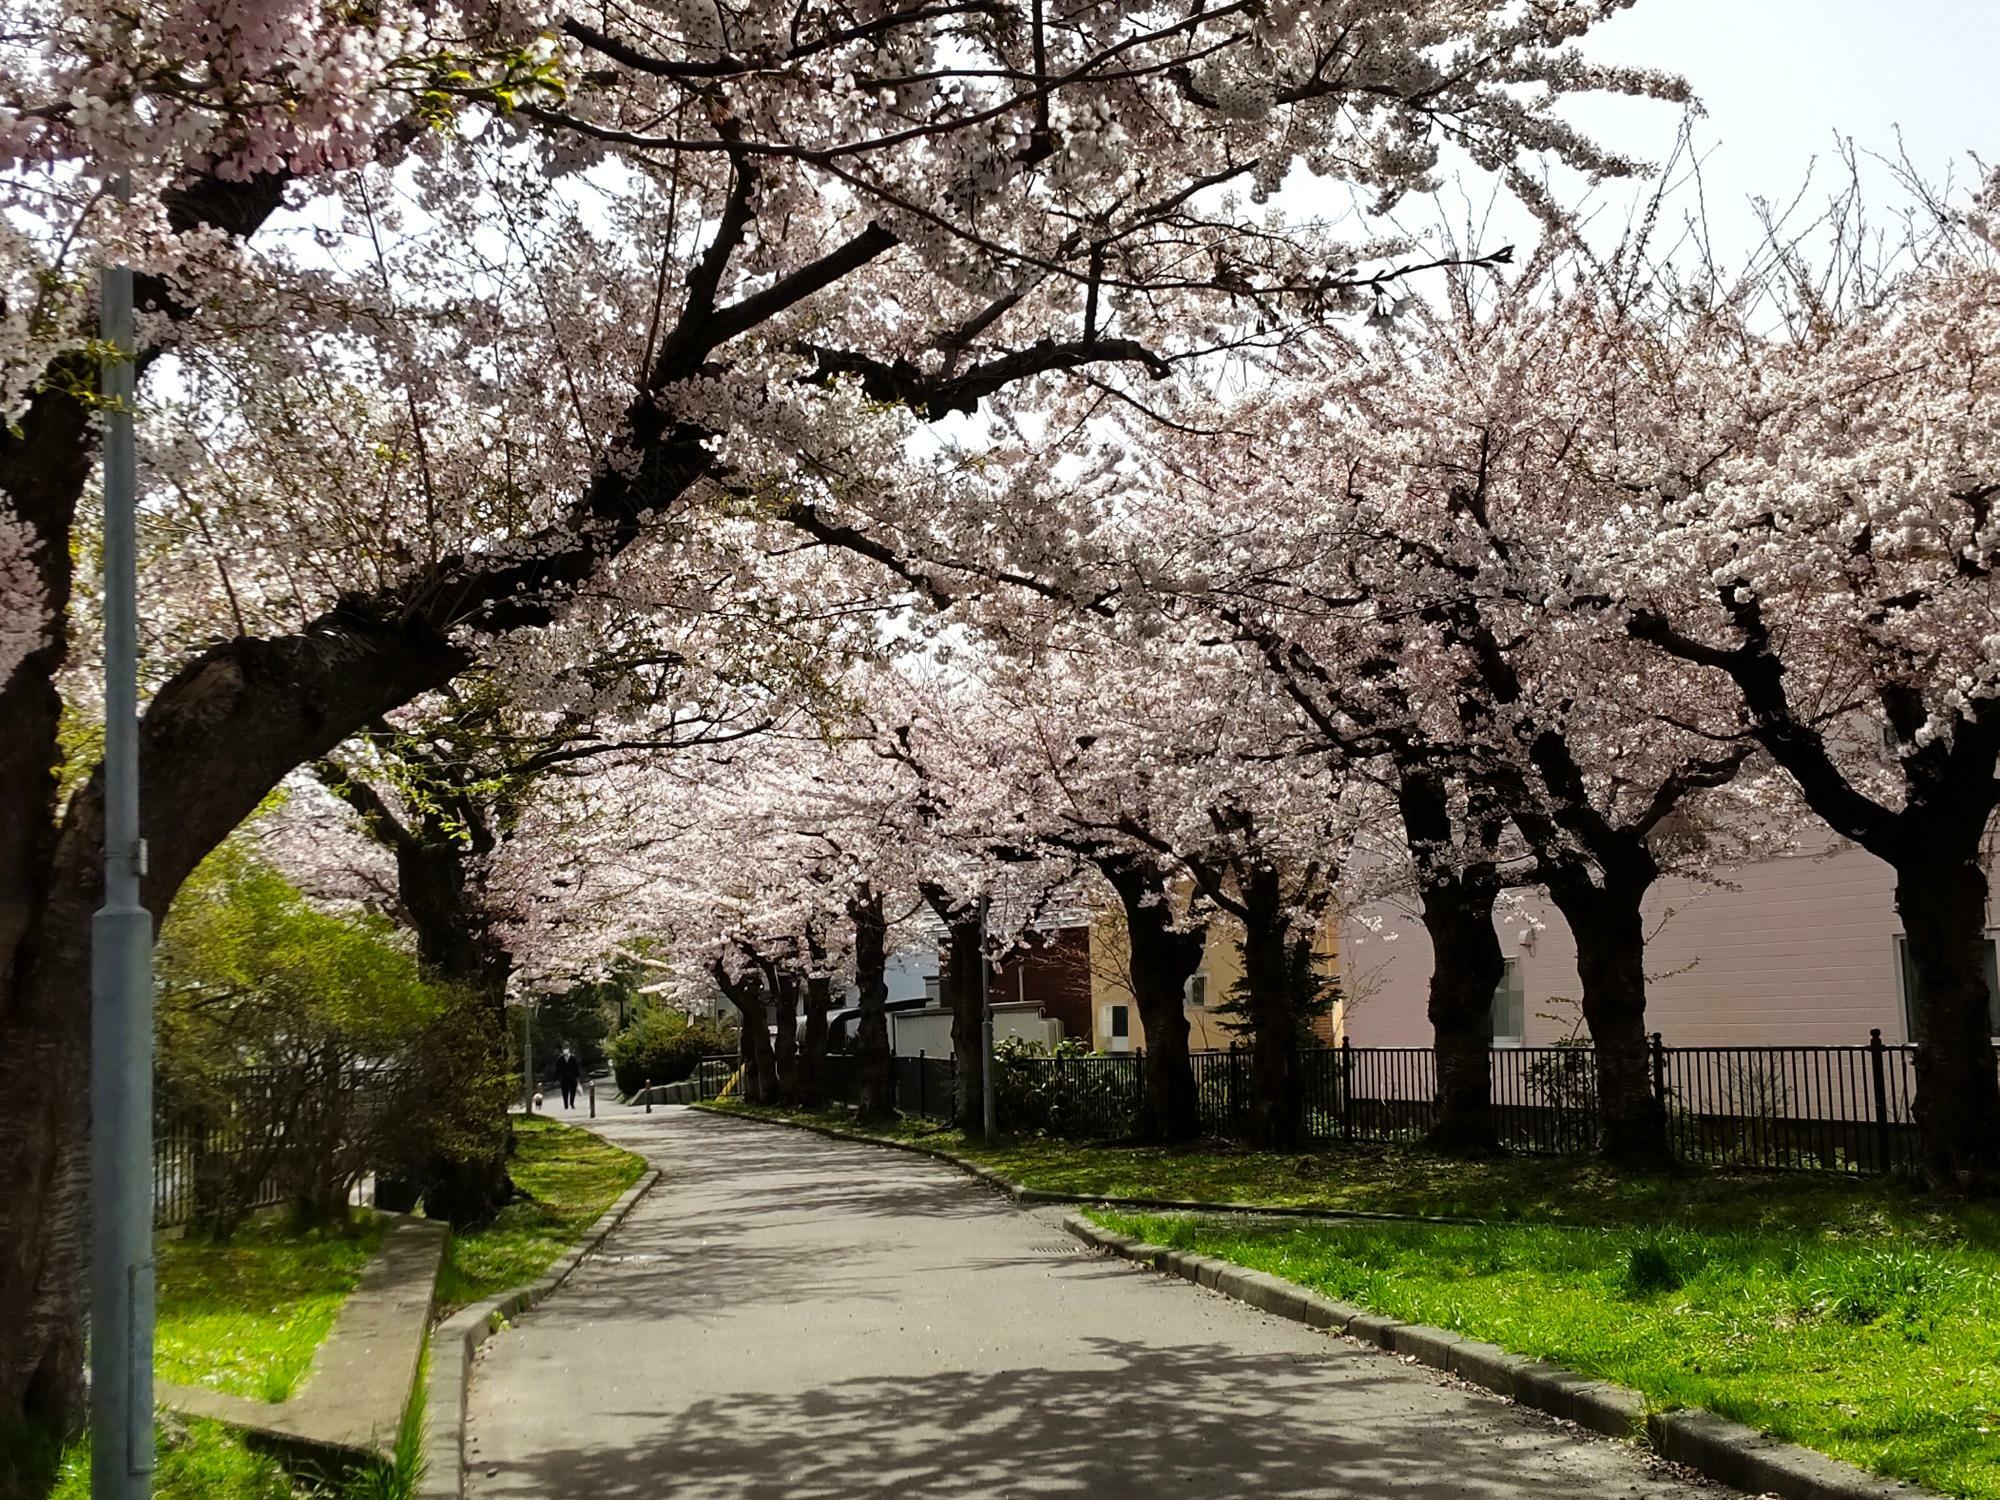 きれいに咲いた桜